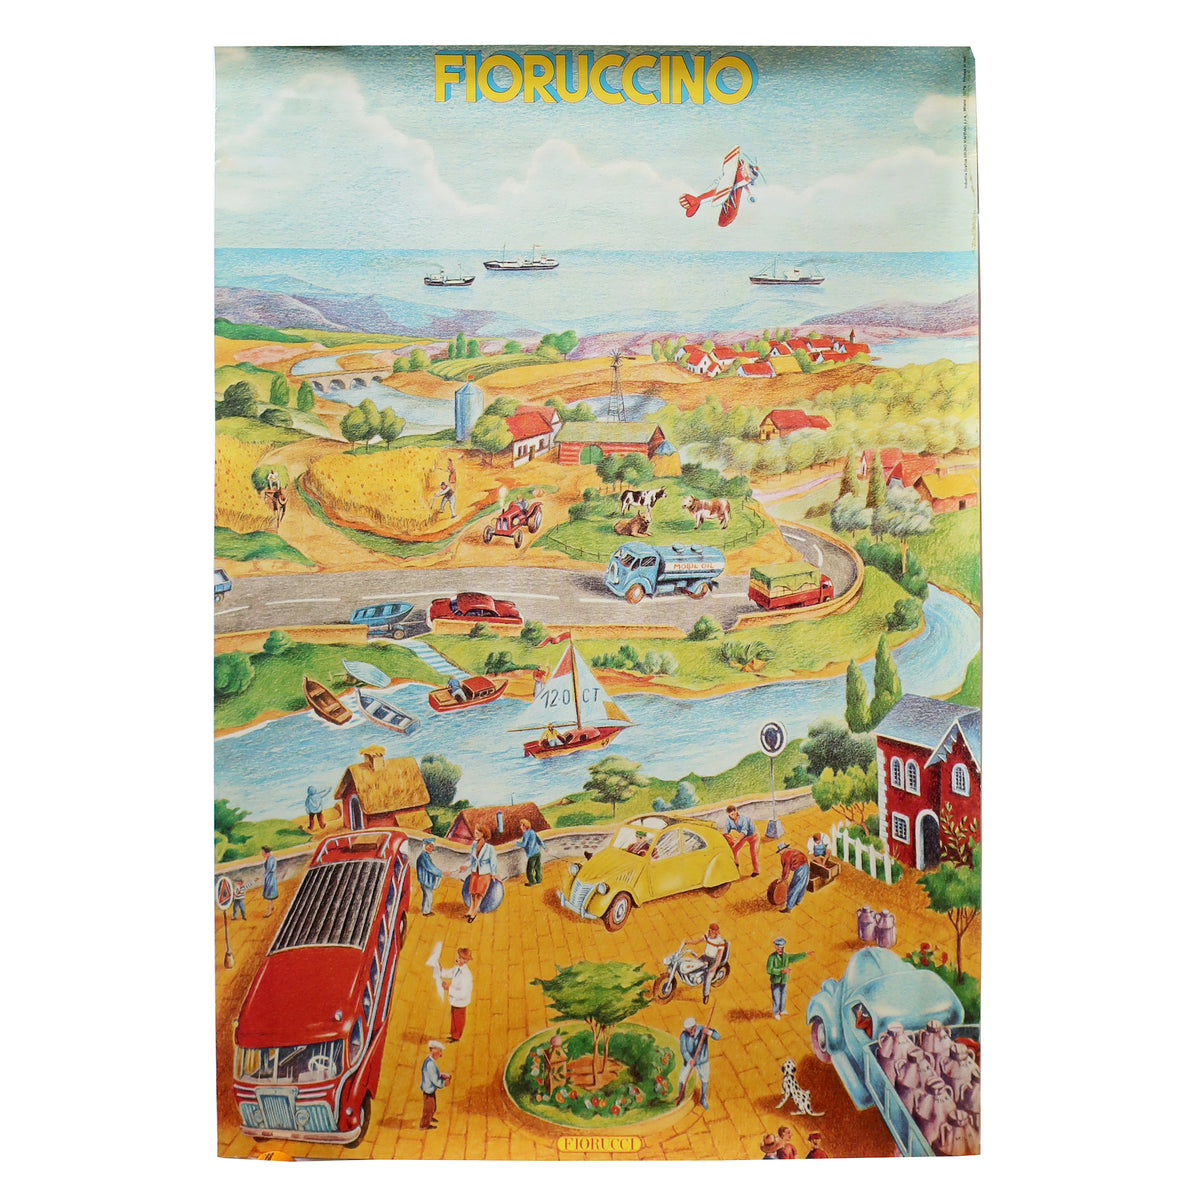 Vintage Fiorucci “Fioruccino” Illustrated Poster 1979 | Tenon Design